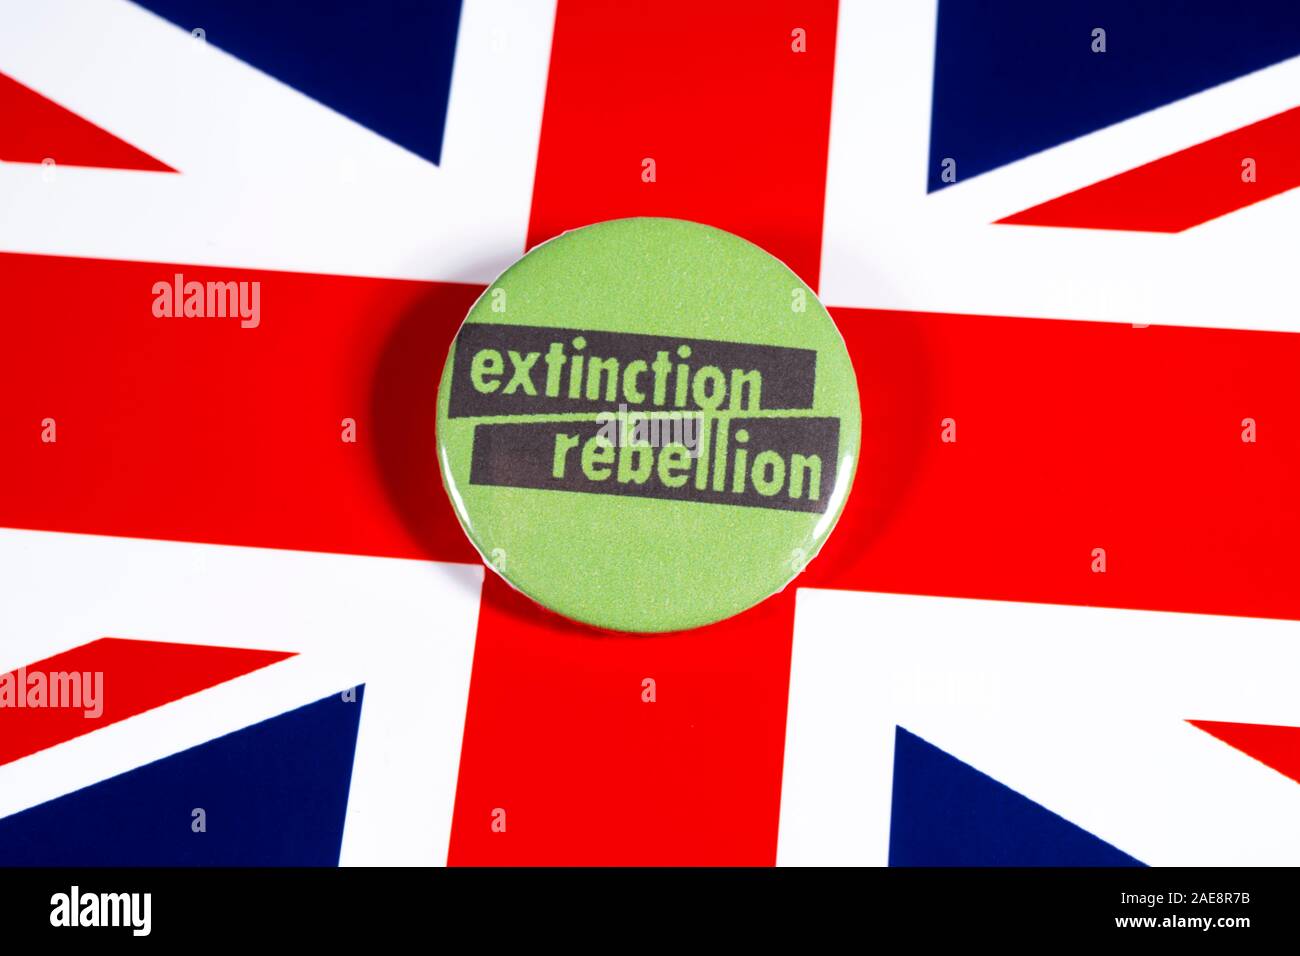 Londres, Reino Unido - 22 de noviembre 2019: El símbolo de la rebelión de extinción - el movimiento ambiental mundial, ilustra sobre la bandera del Reino Unido. Foto de stock